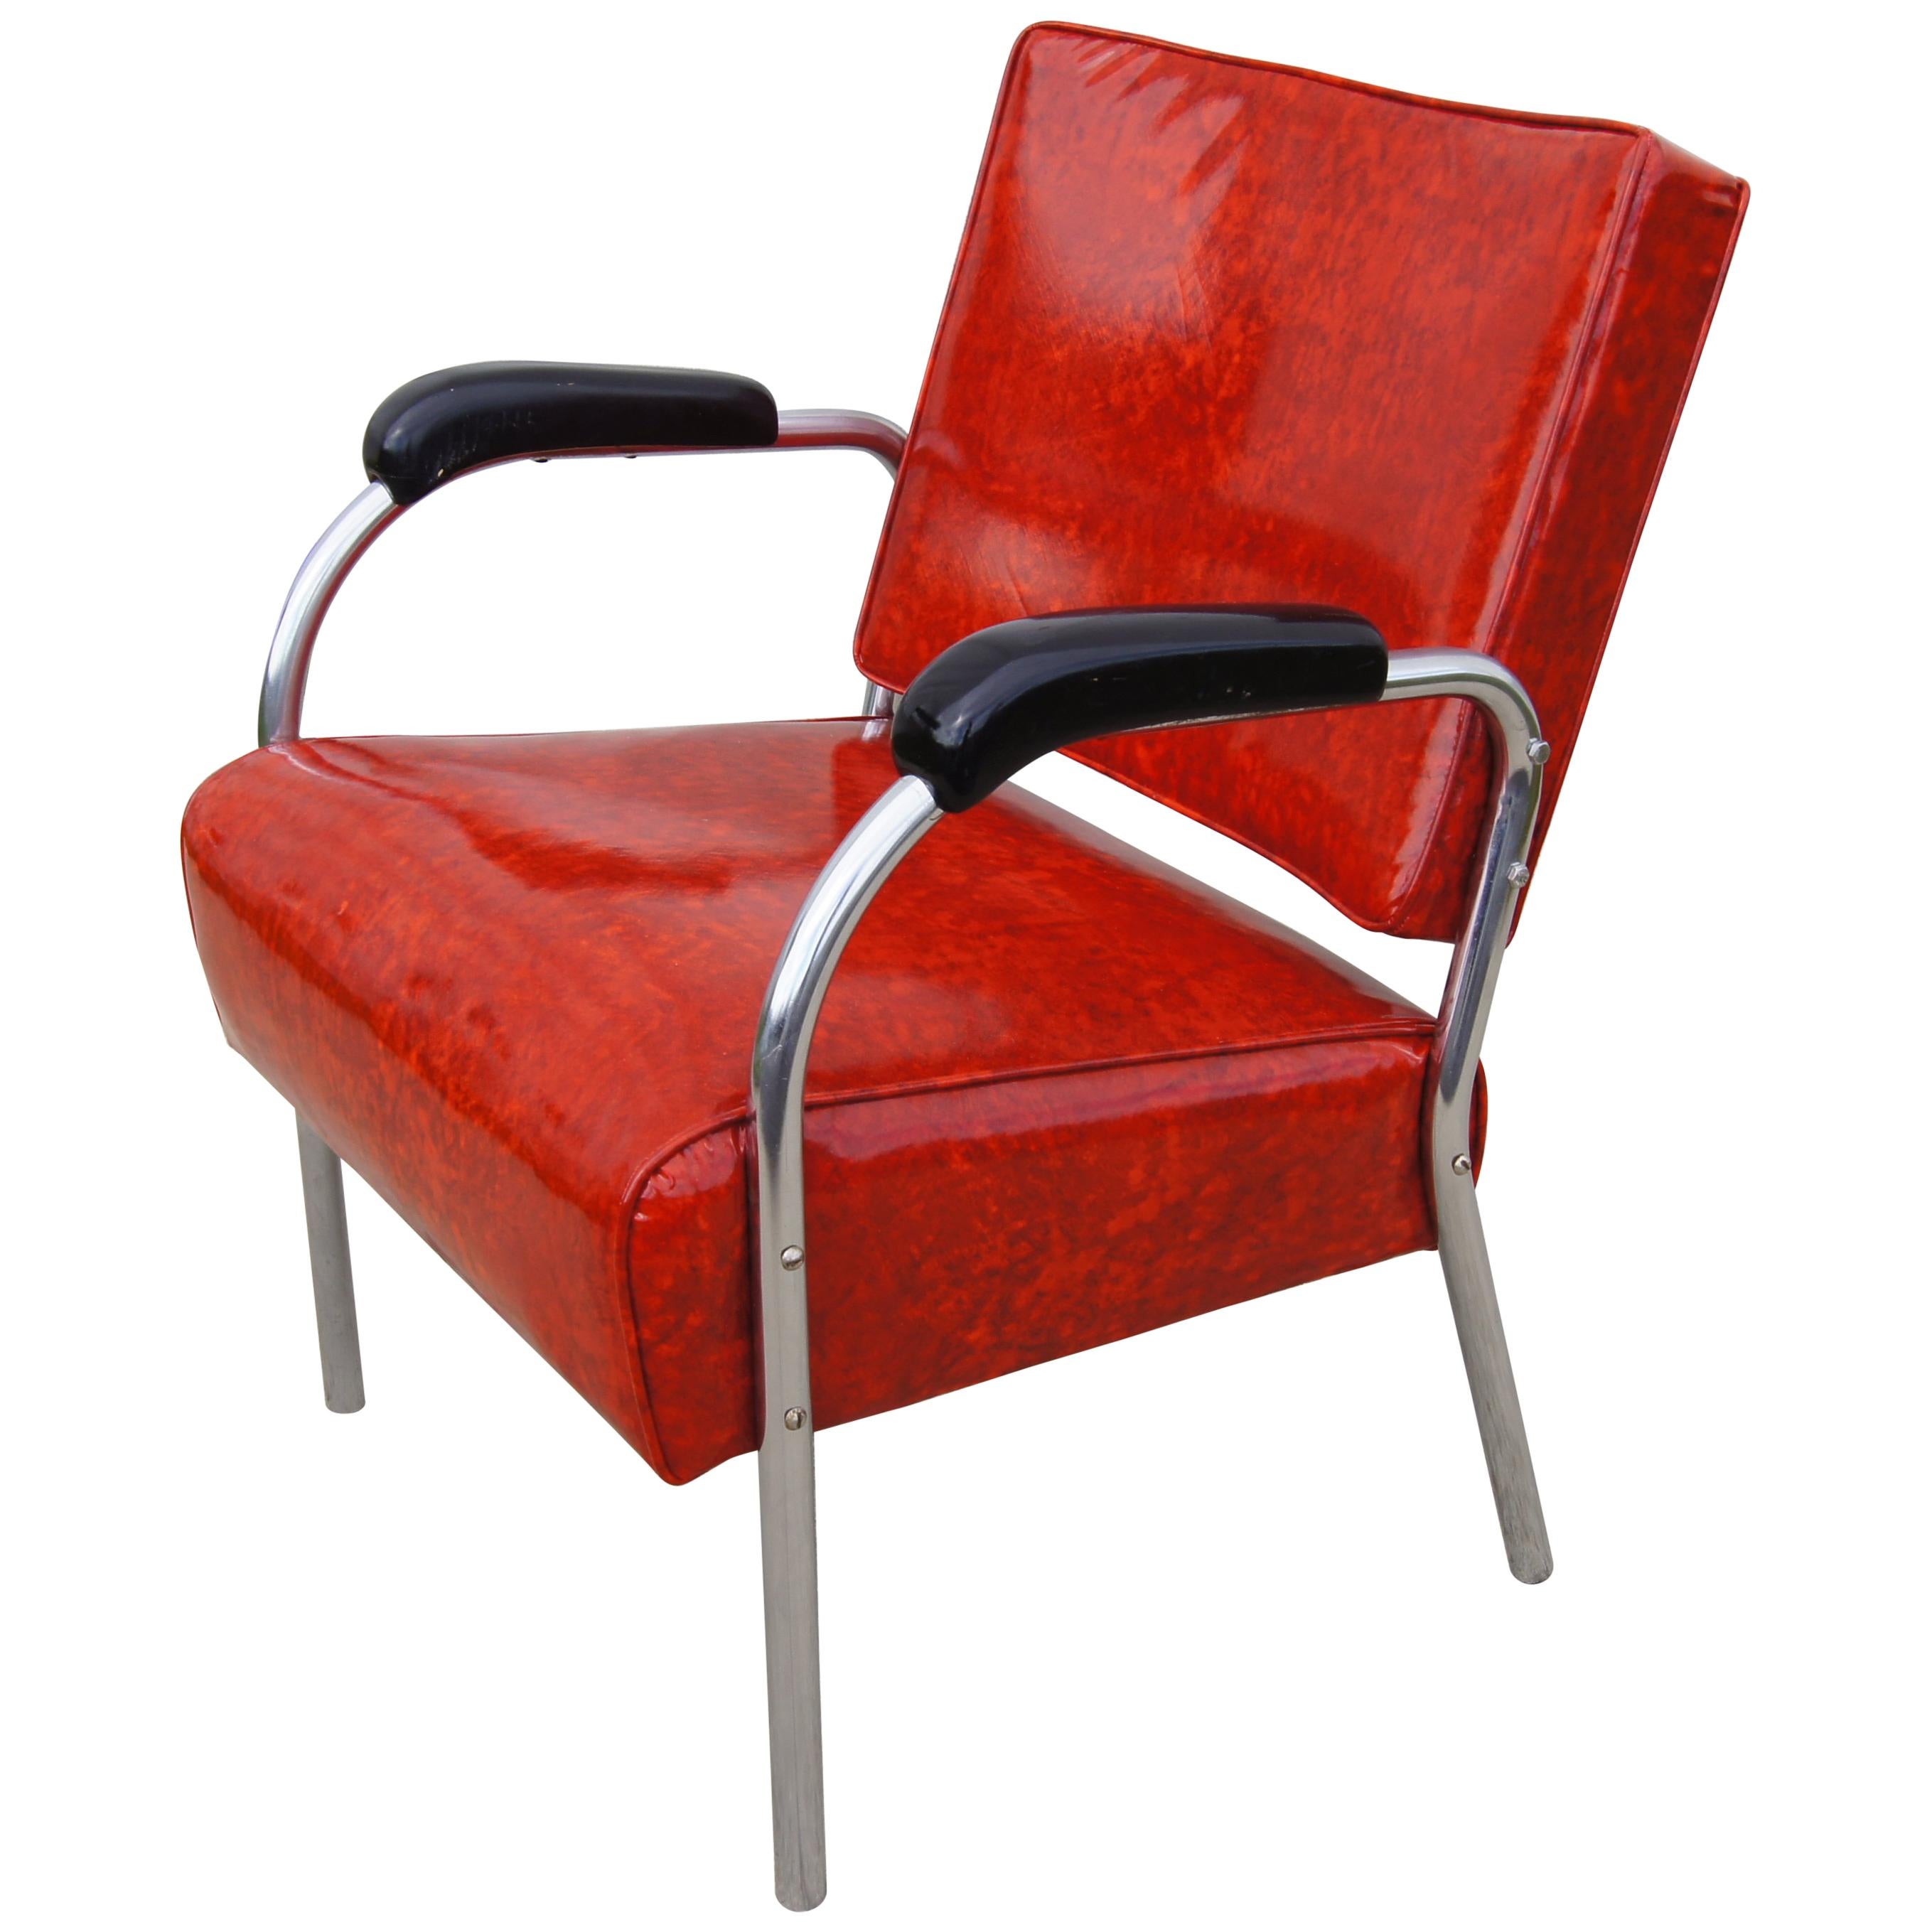 Tubular Chrome and Red Naugahyde 1940s Moderne Armchair For Sale